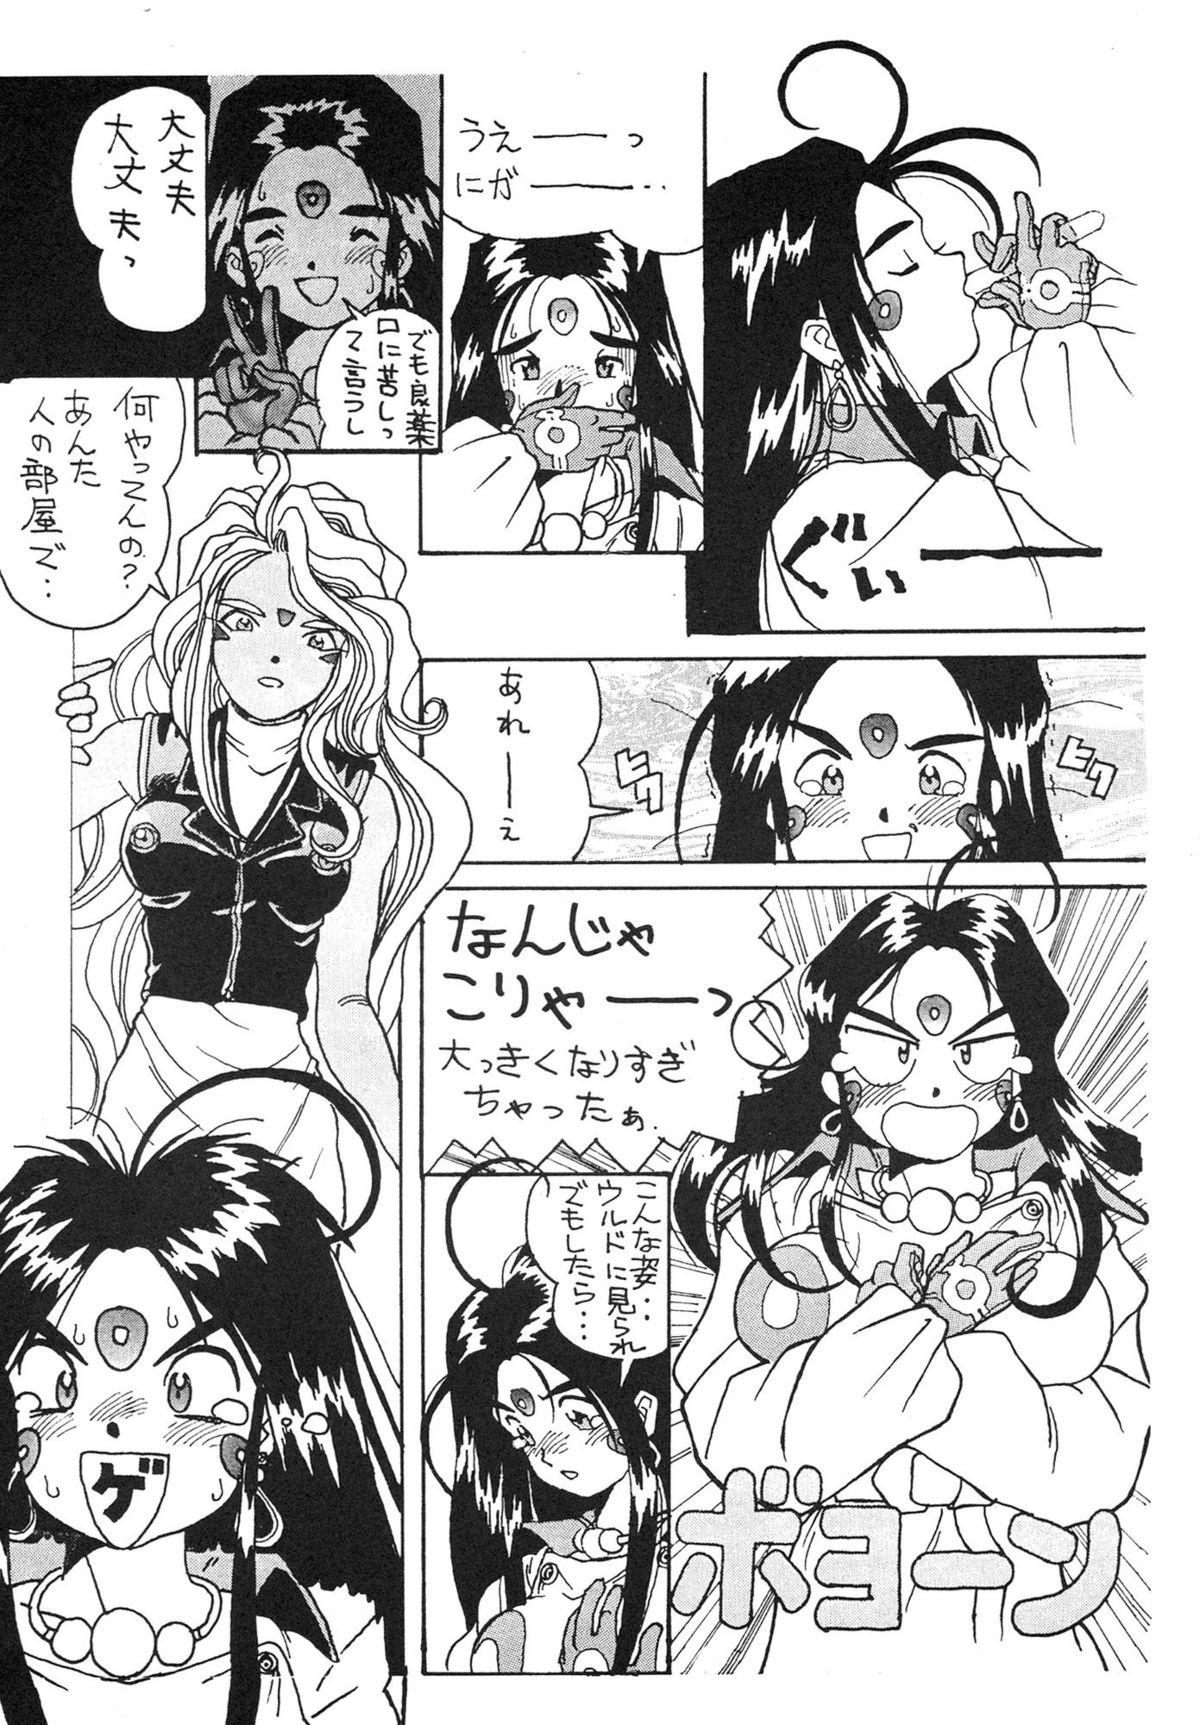 Harcore Ah Ah Megamisamasama - Ah my goddess Wives - Page 11